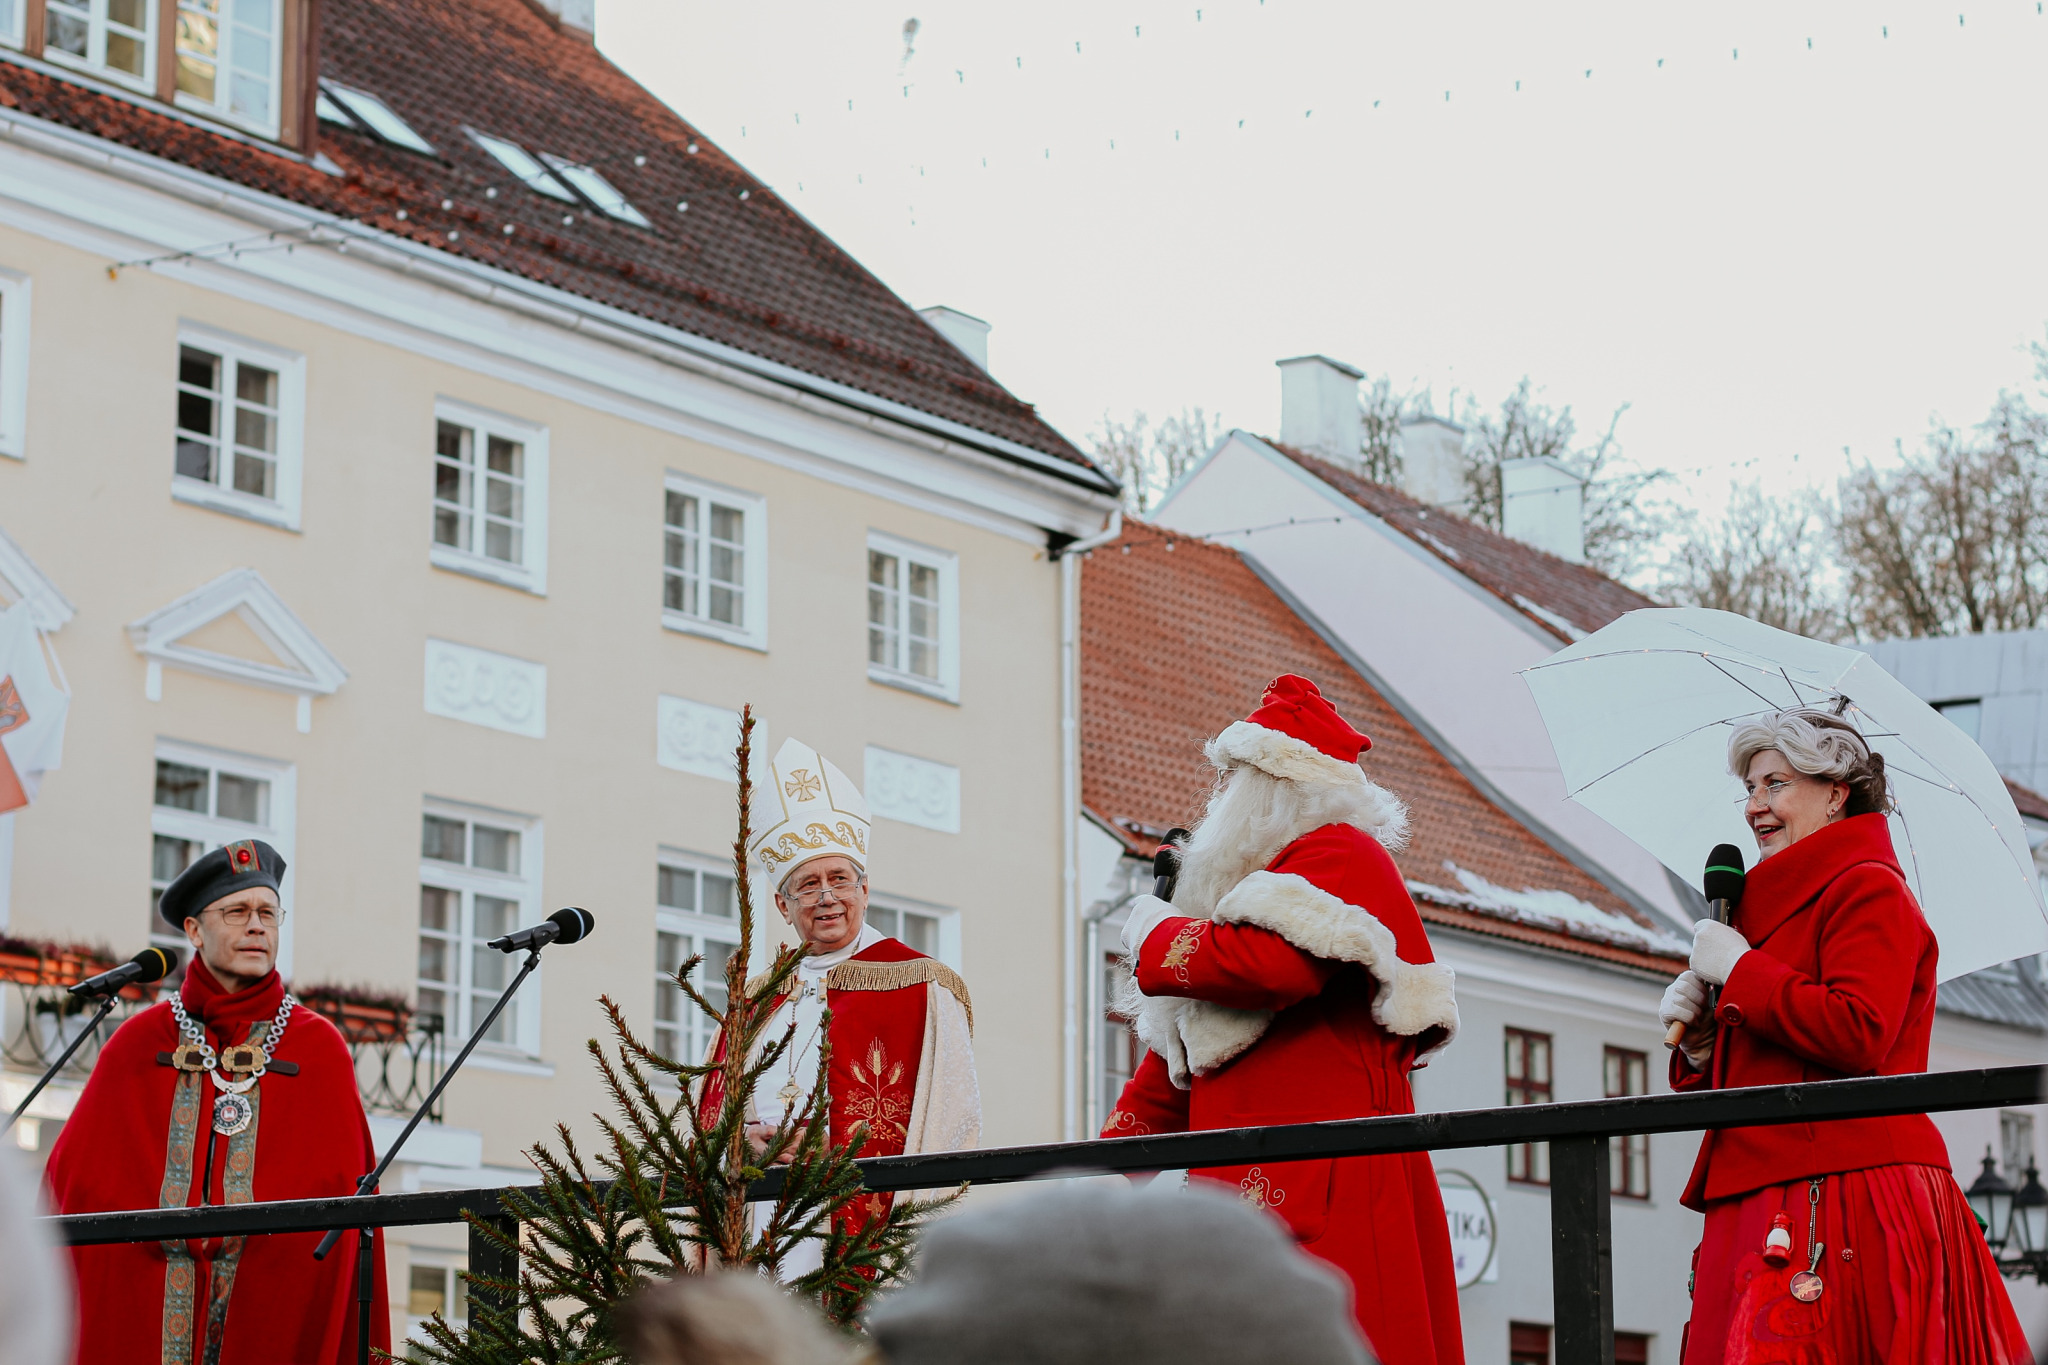 Jõululaupäeval kuulutatakse Tartu raekoja platsil välja jõulurahu